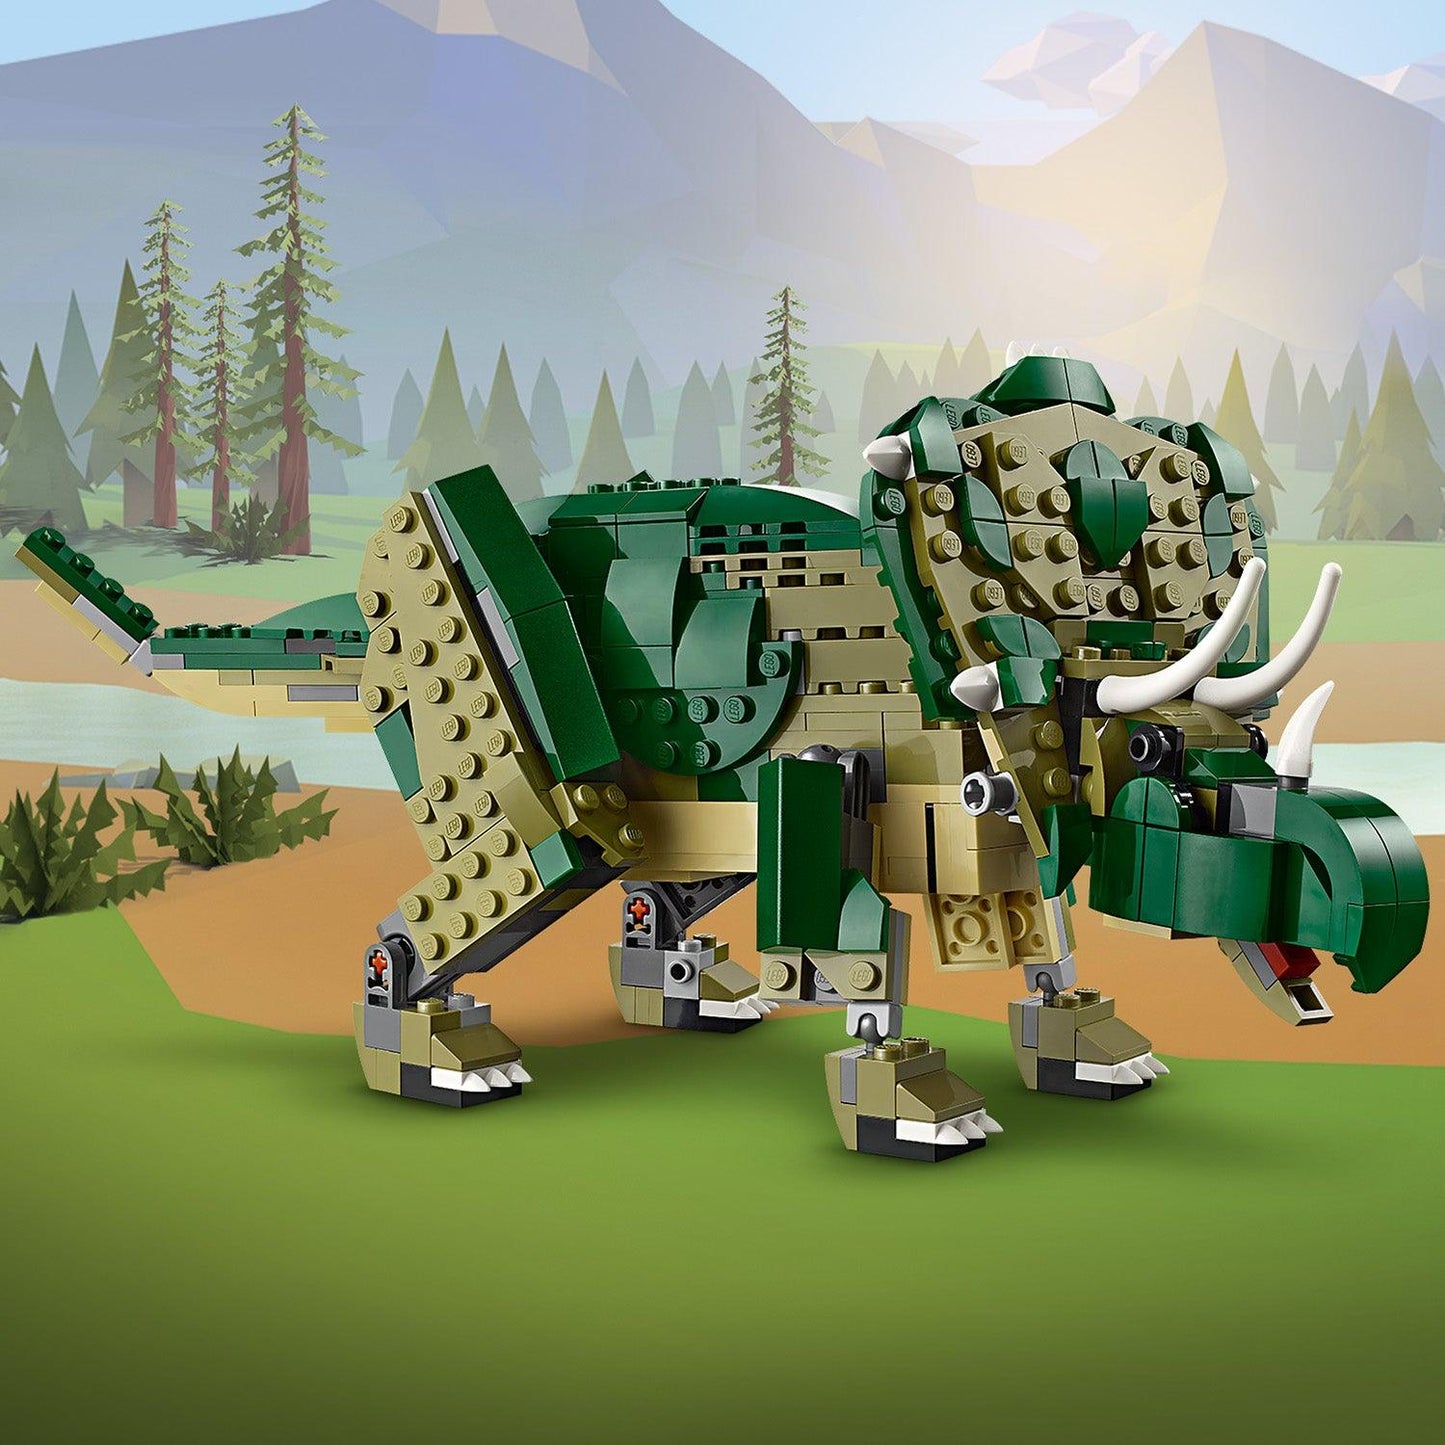 LEGO Angstaanjagende T-Rex 31151 Creator (verwacht juni) LEGO CREATOR 3 IN 1 @ 2TTOYS LEGO €. 49.99